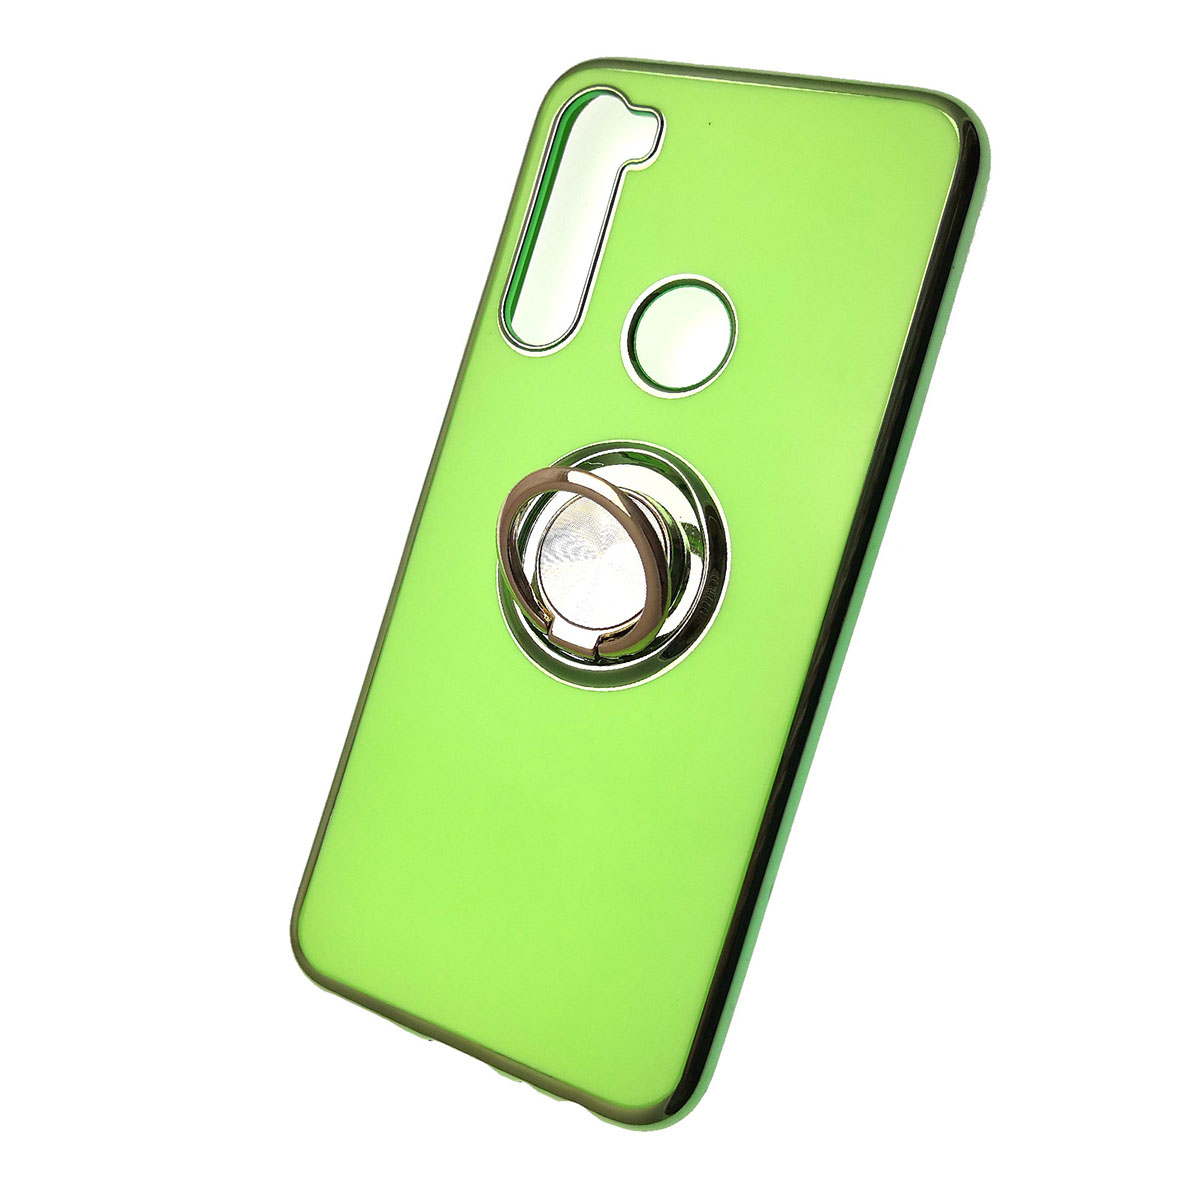 Чехол накладка для XIAOMI Redmi Note 8, силикон, кольцо держатель, цвет зеленый.